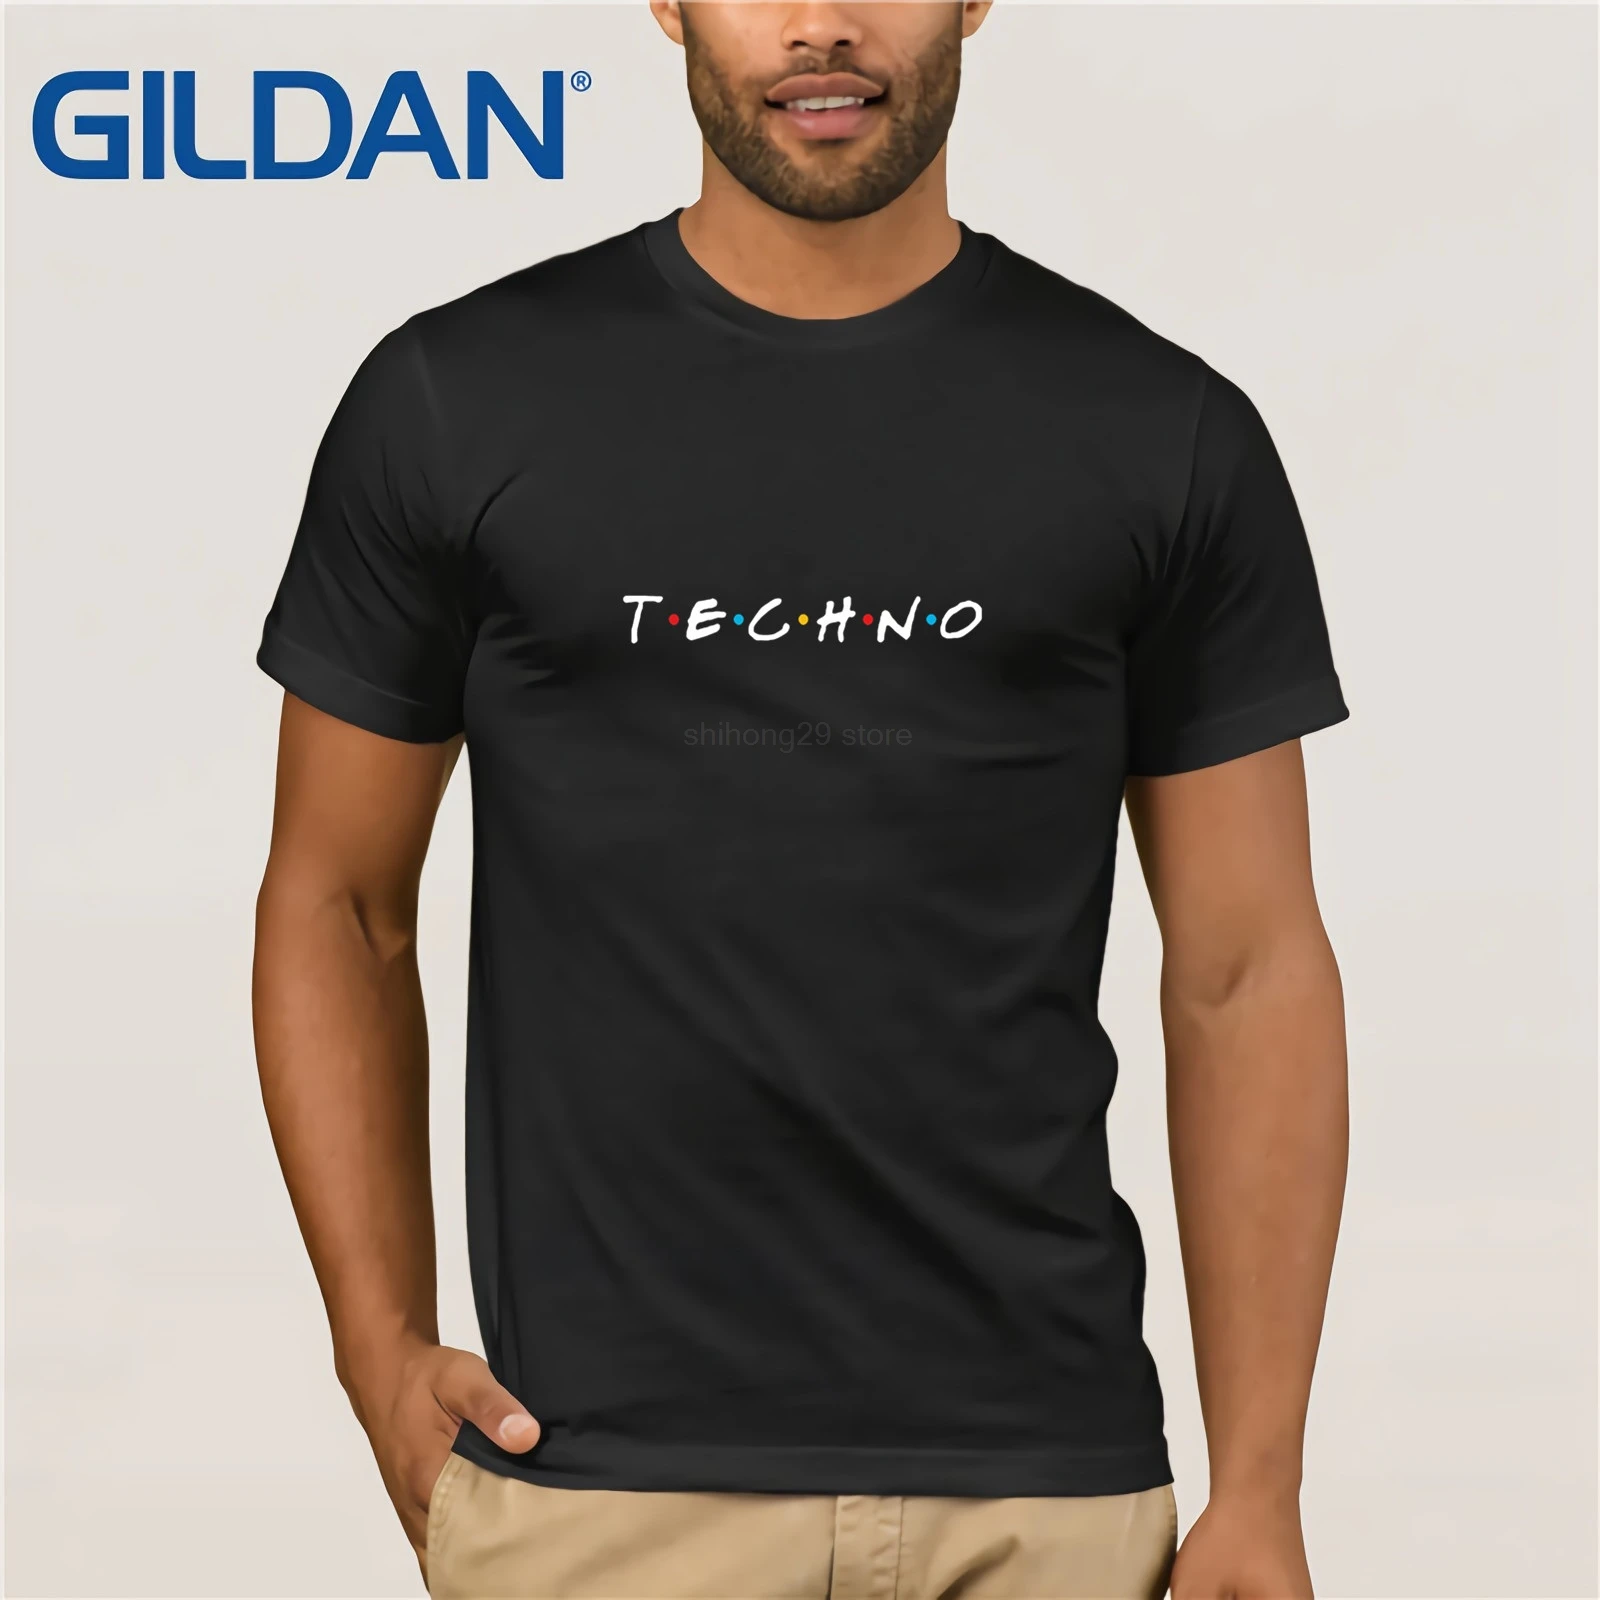 Хип-хоп мужские футболки Футболка Techno Friend индивидуальные с коротким рукавом для мужчин футболки Топы Плюс Размер